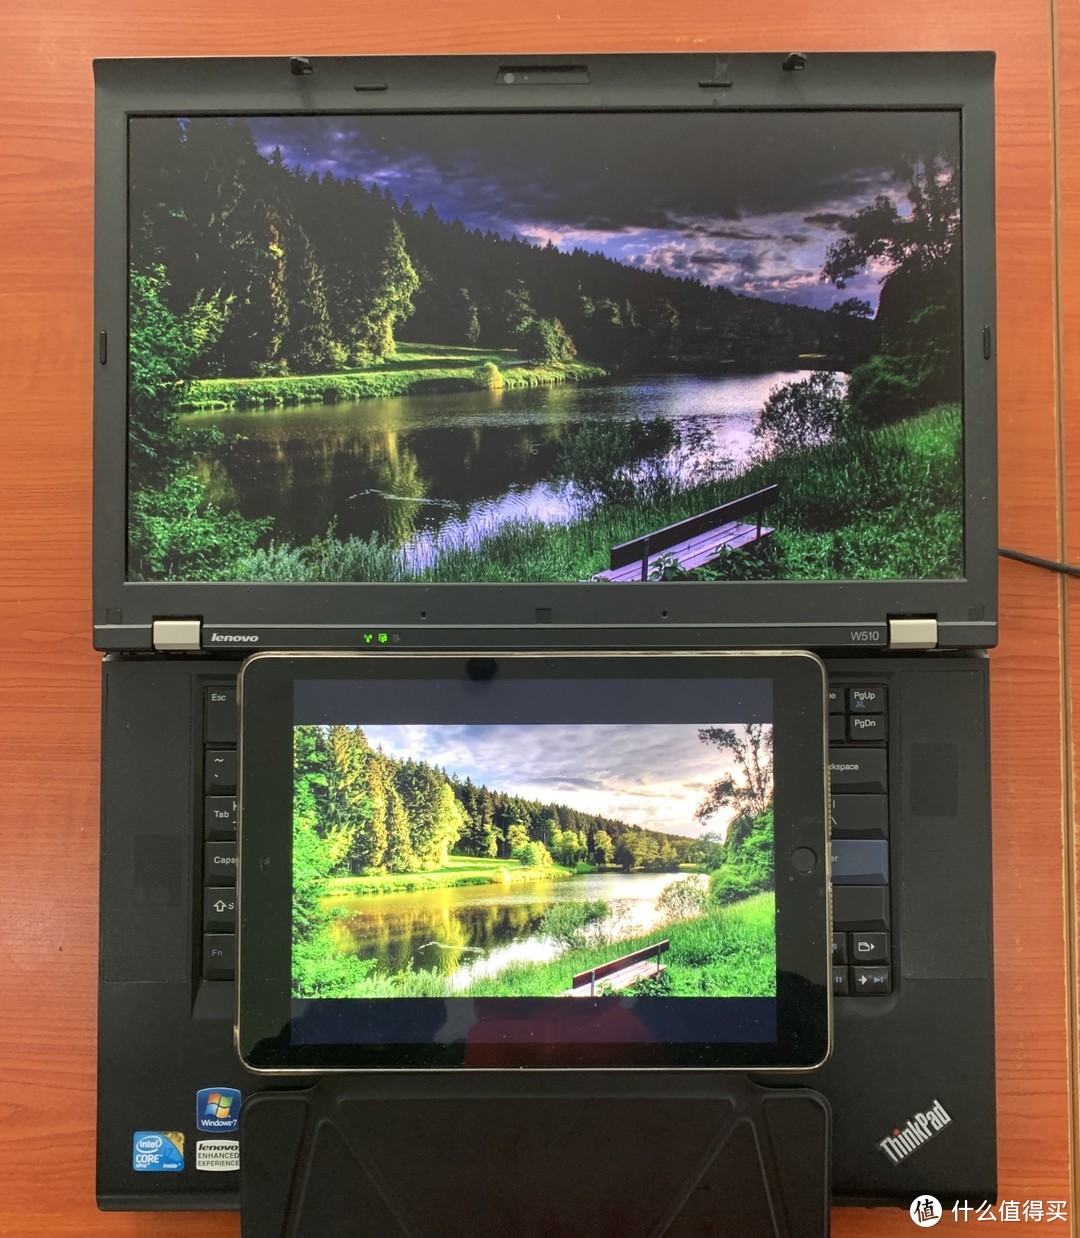 图书馆猿の联想 Lenovo ThinkPad W510 简单晒